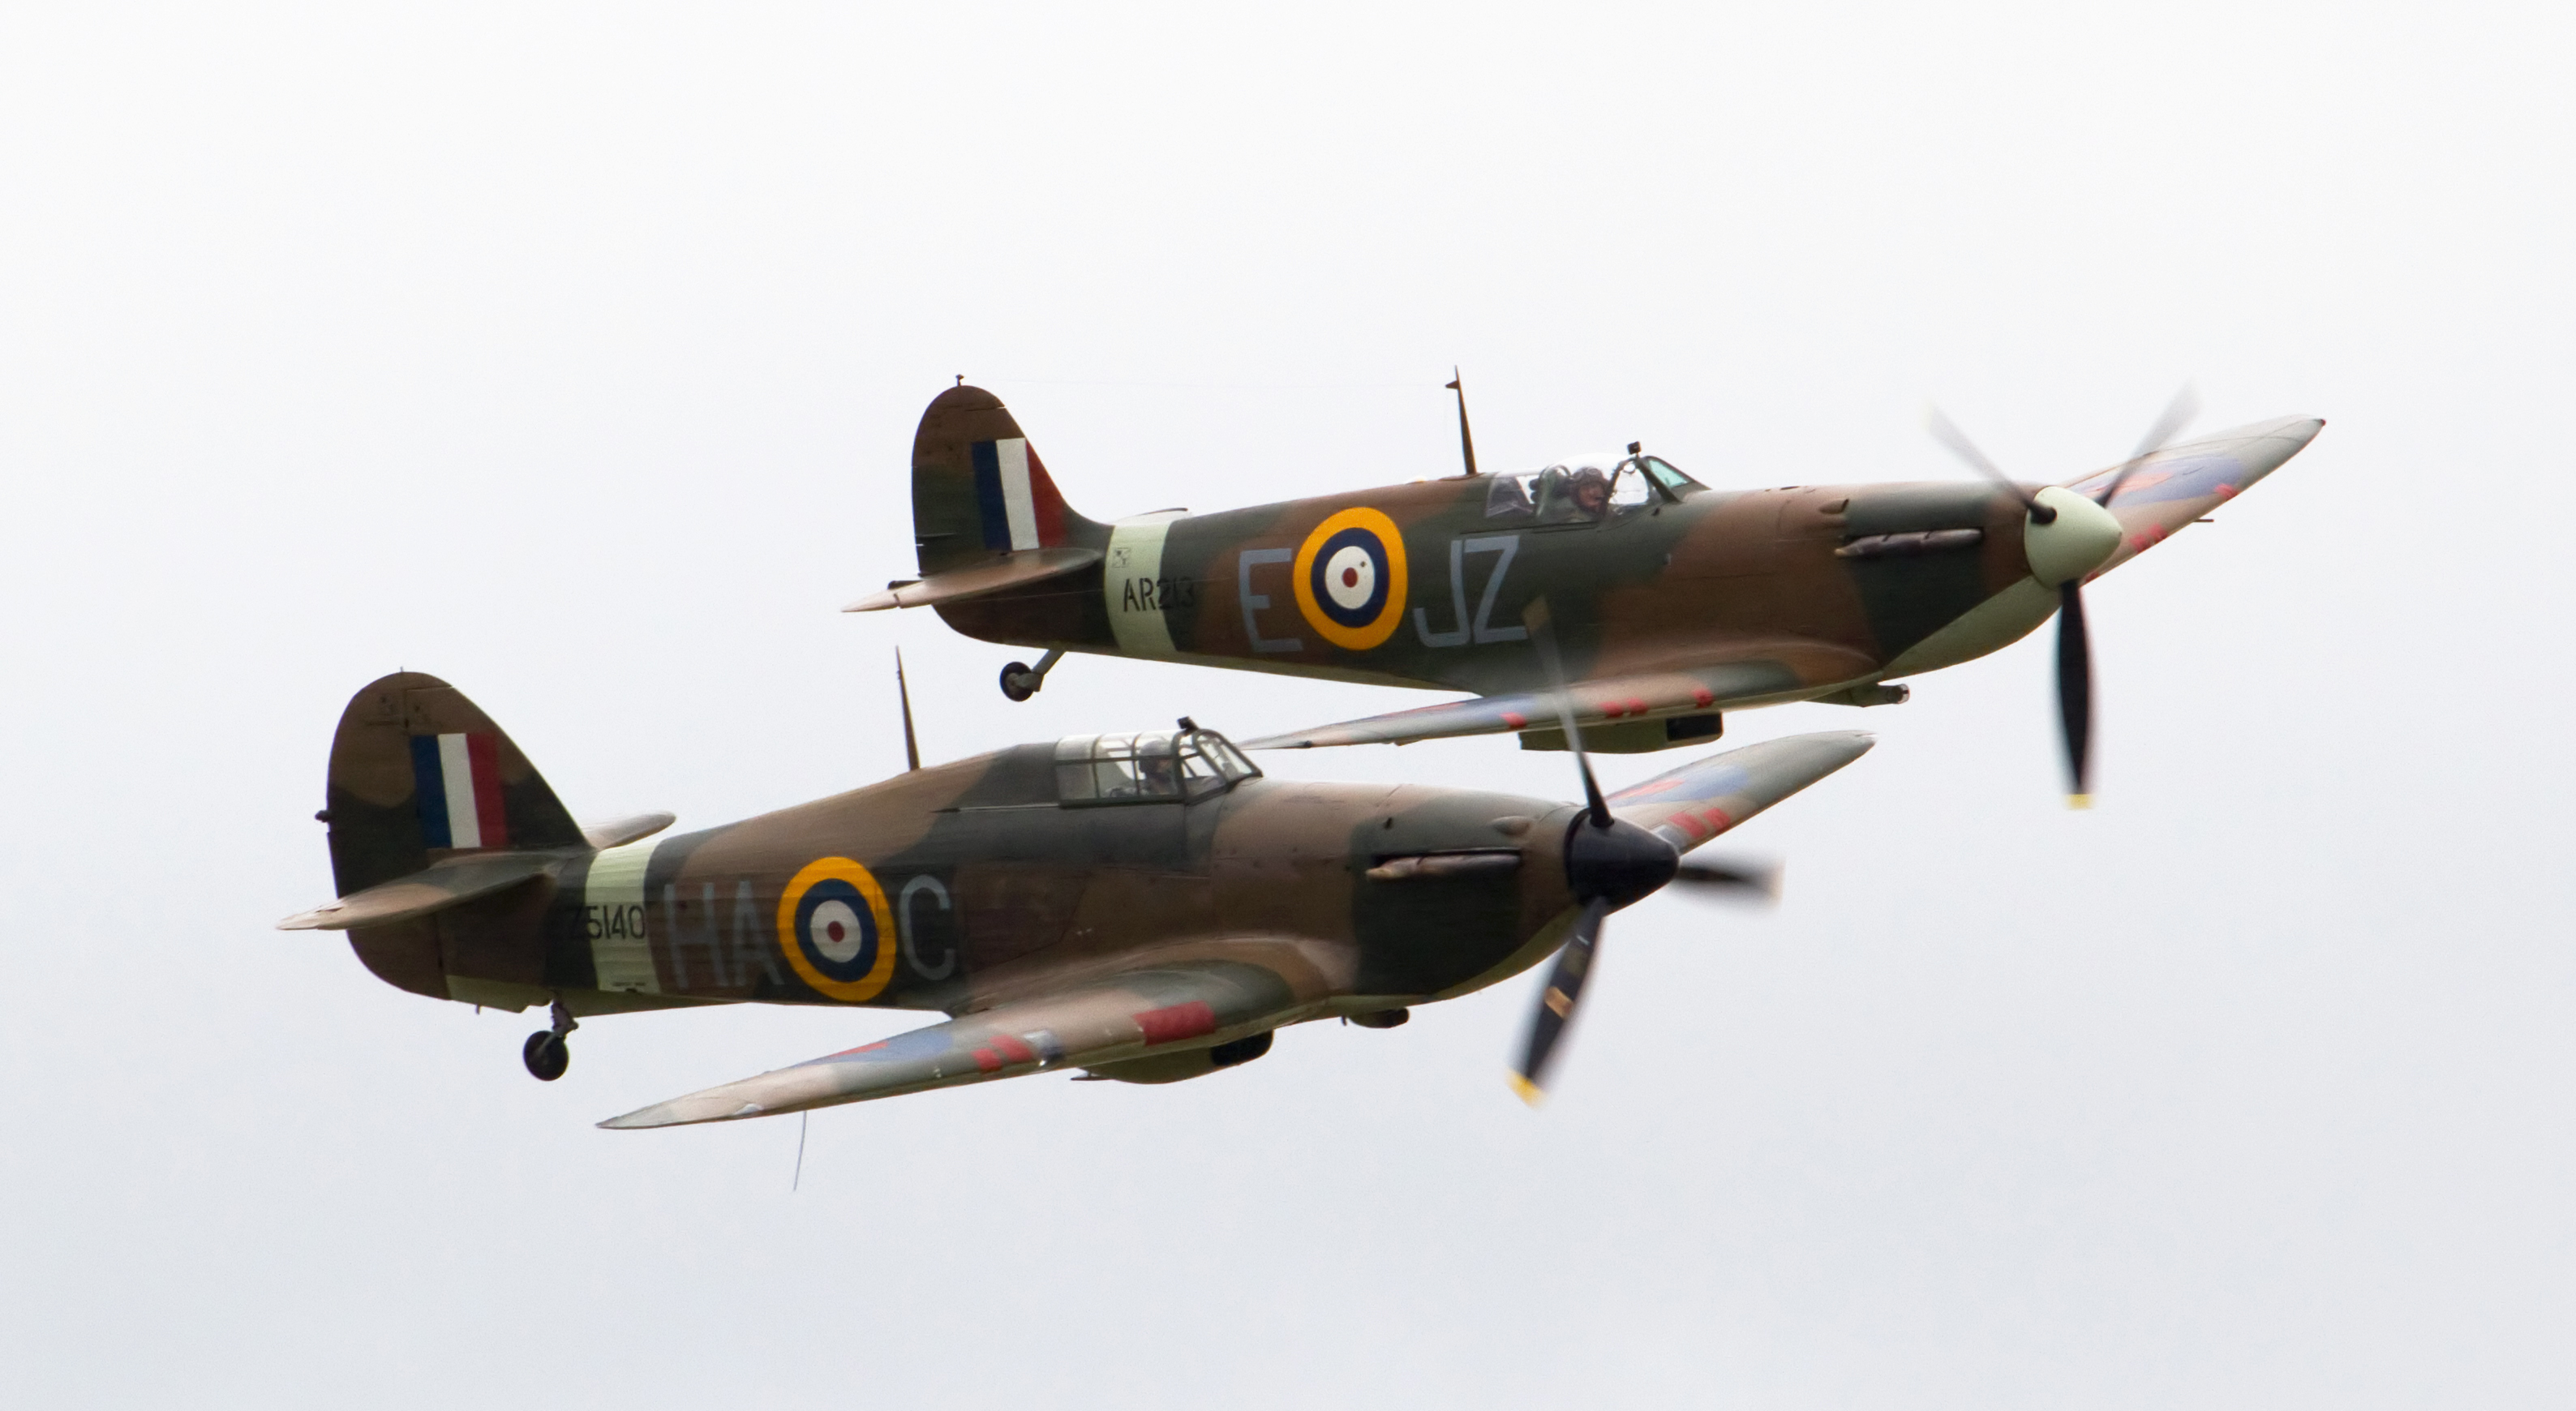 Enquanto o Hurricane carregava o piano na Batalha da Grã-Bretanha, o Spitfire recebia os louros...